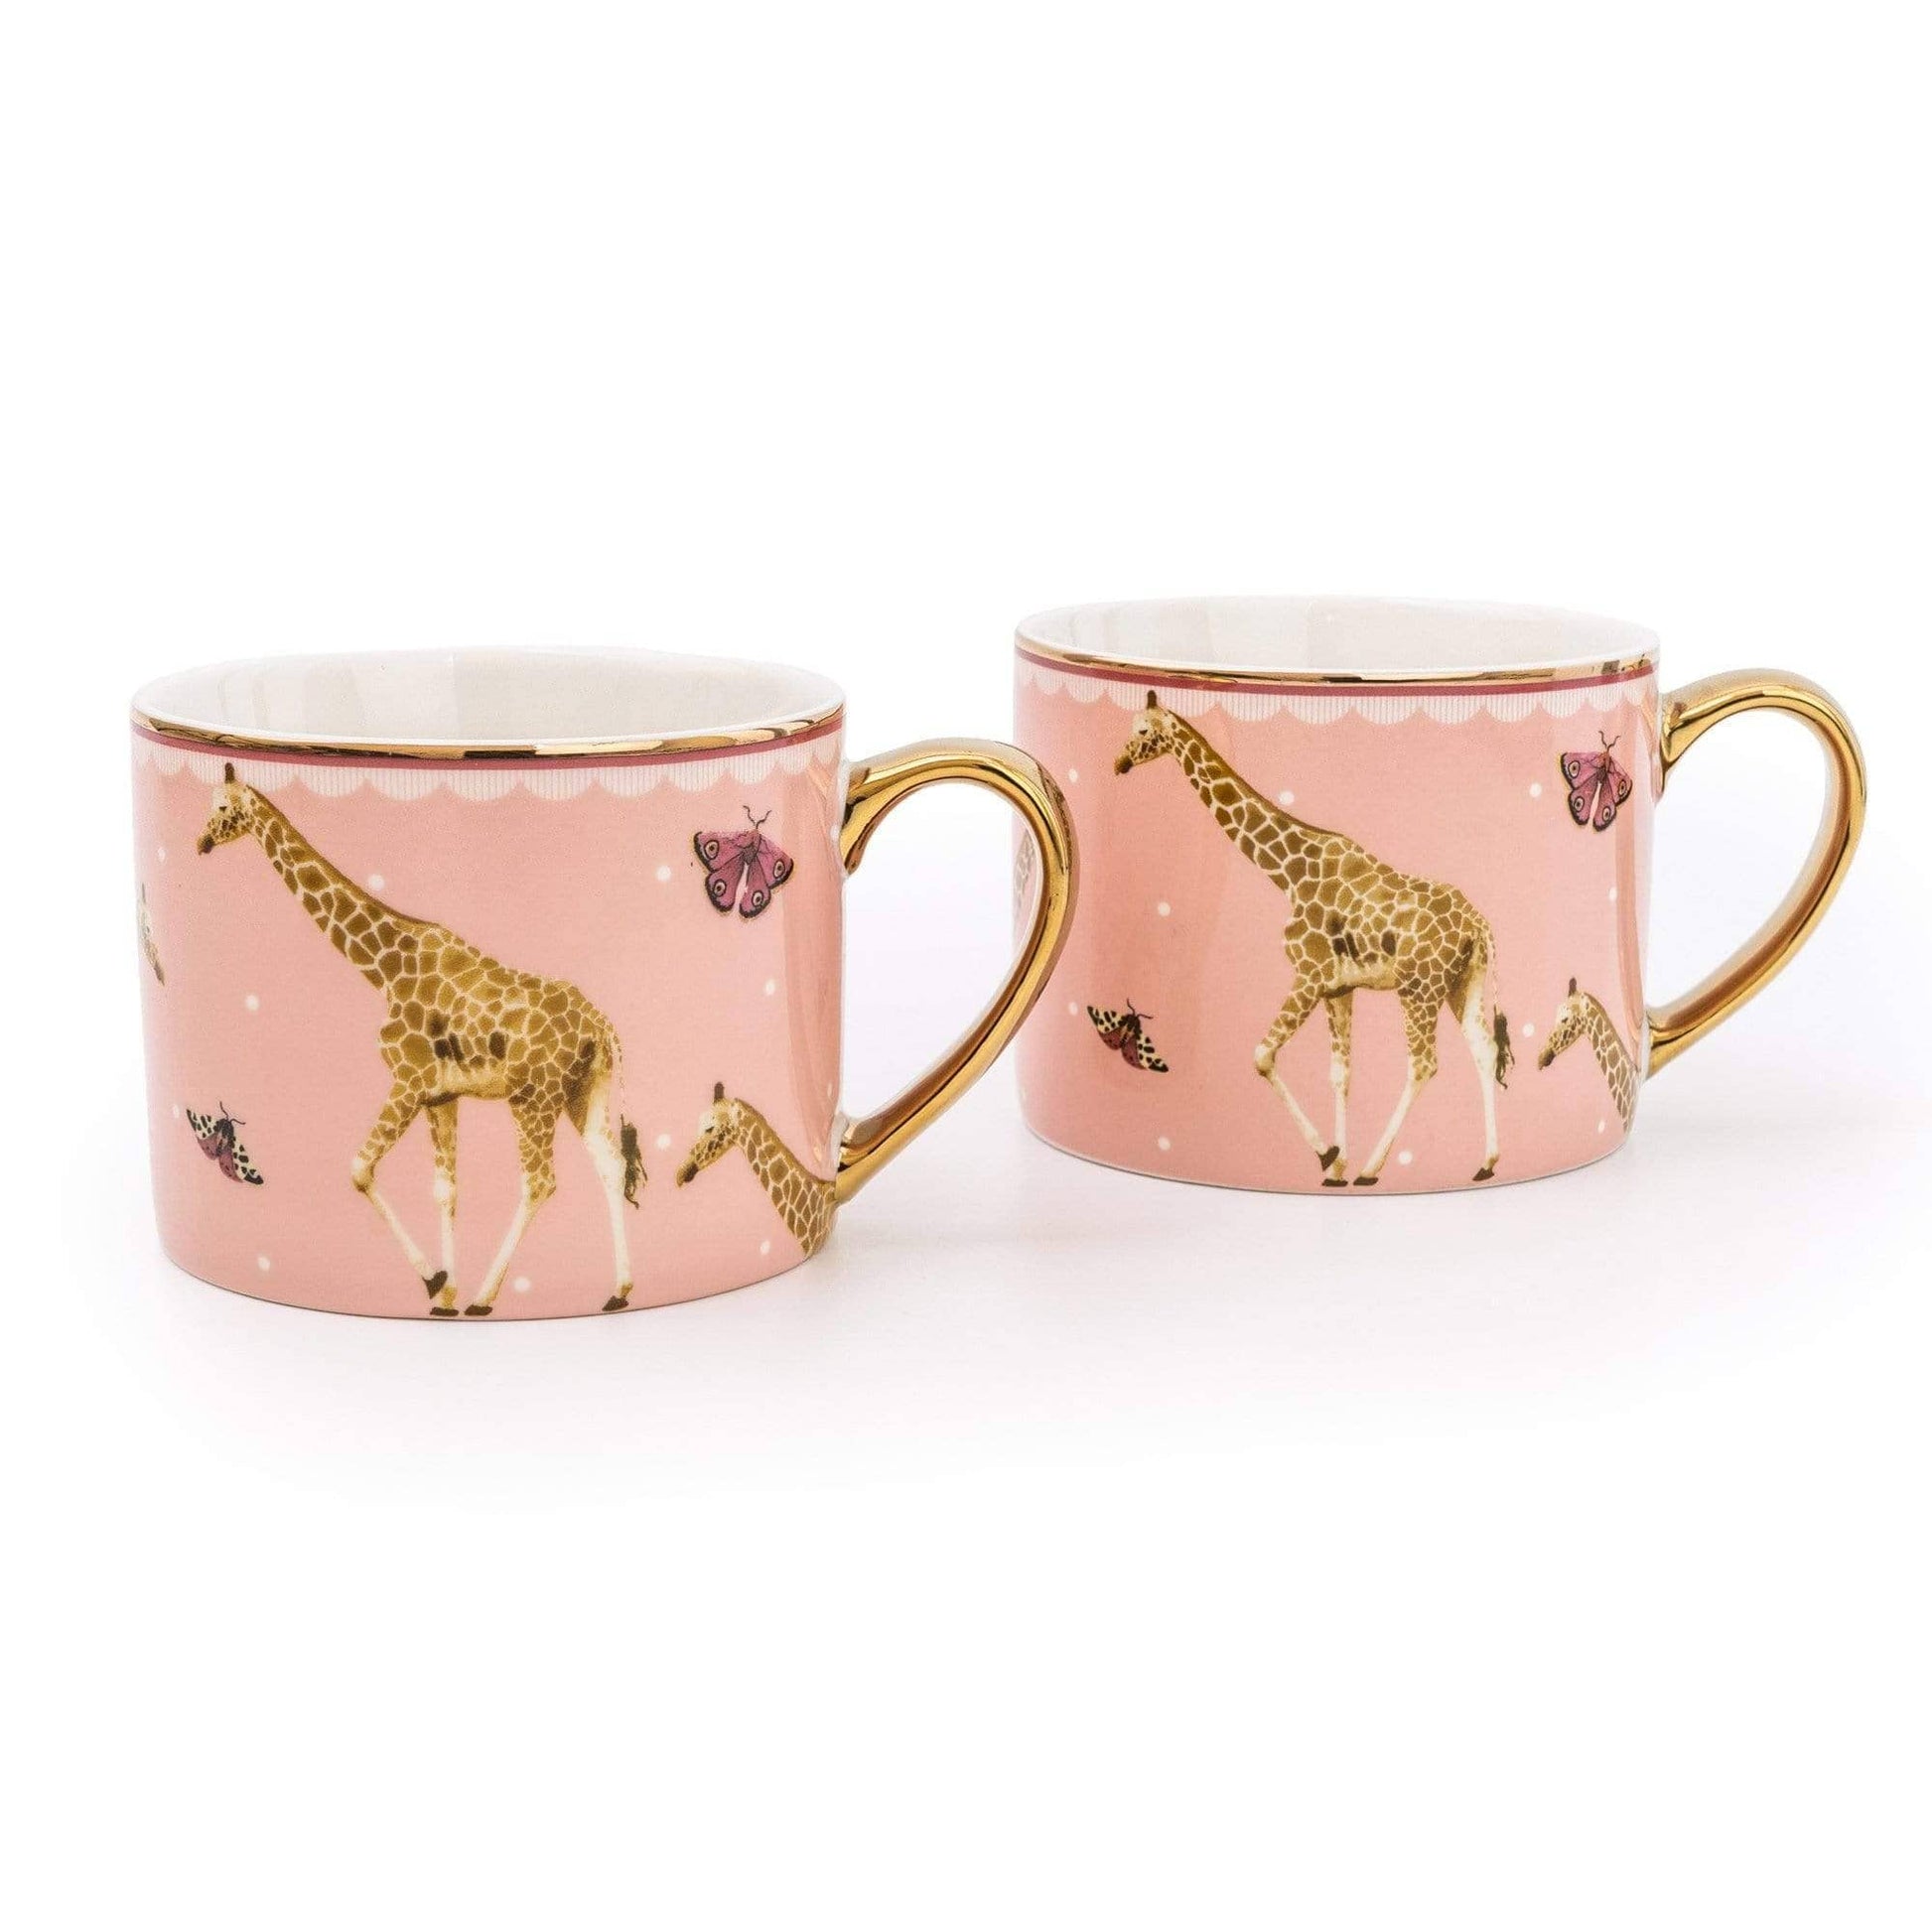 Homeware  -  Set of 2 Giraffe Mugs  -  60005332